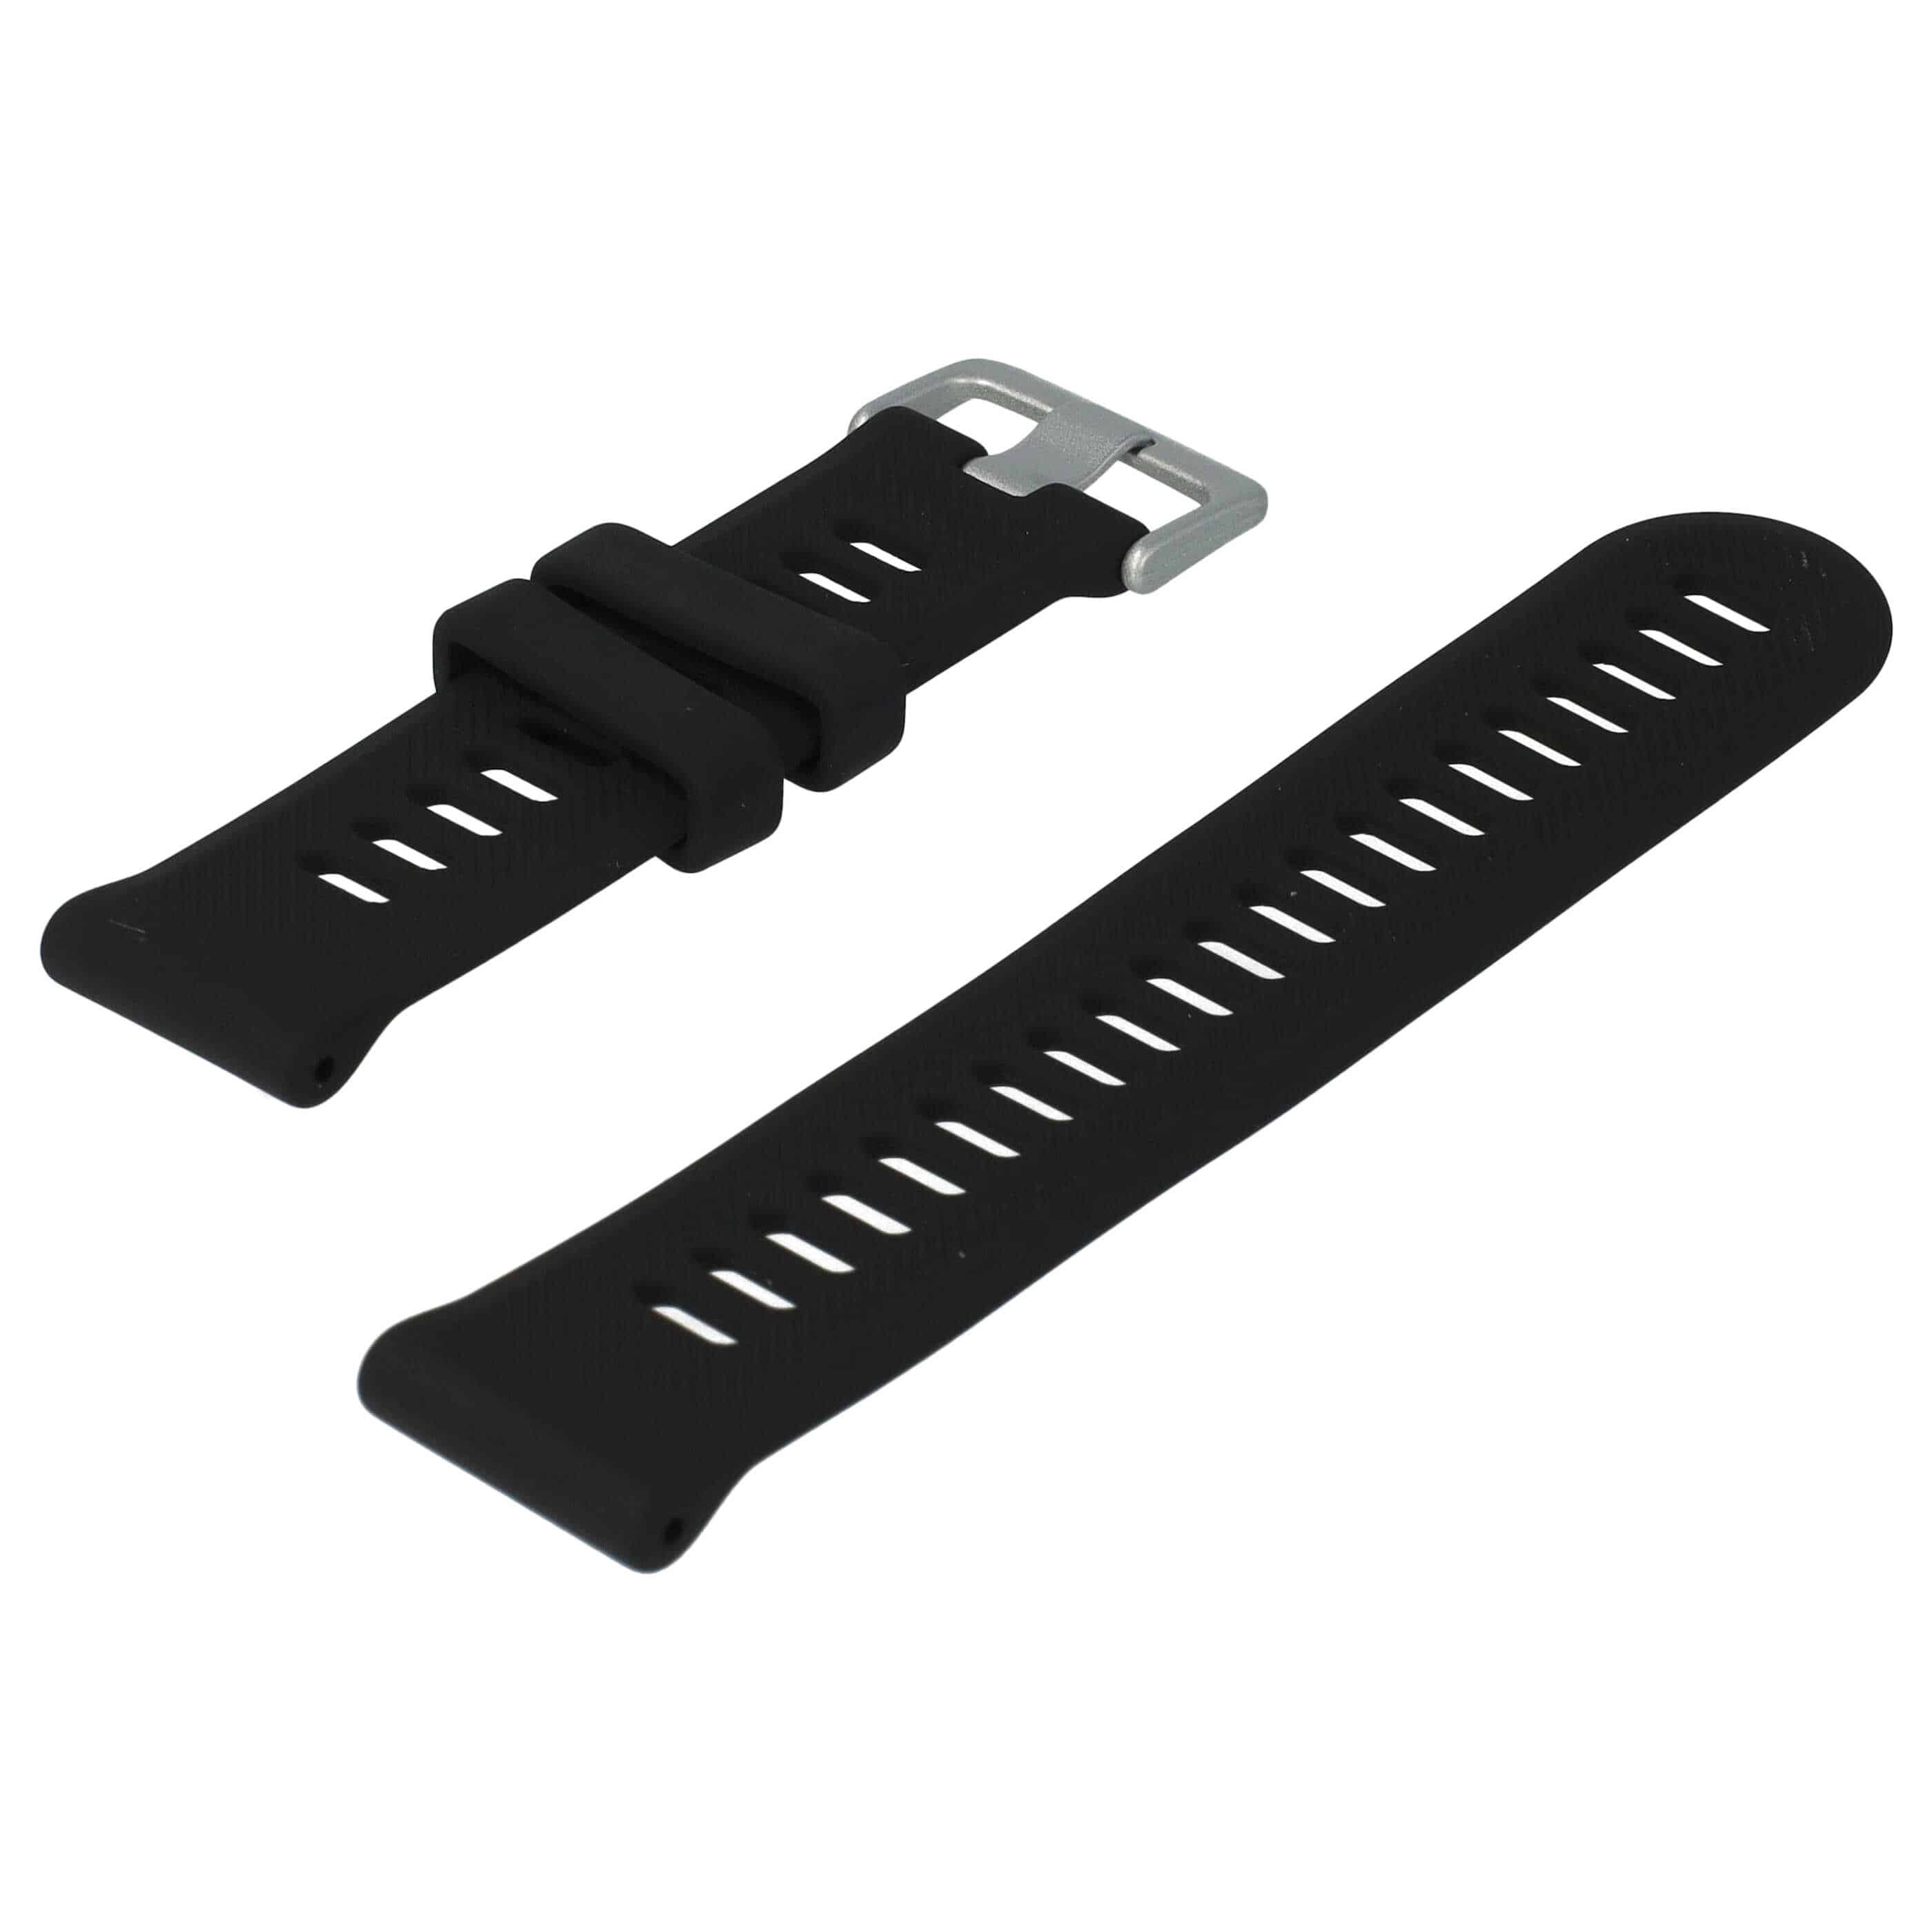 Armband für Garmin Forerunner Smartwatch - 9 + 12,2 cm lang, 22mm breit, Silikon, schwarz